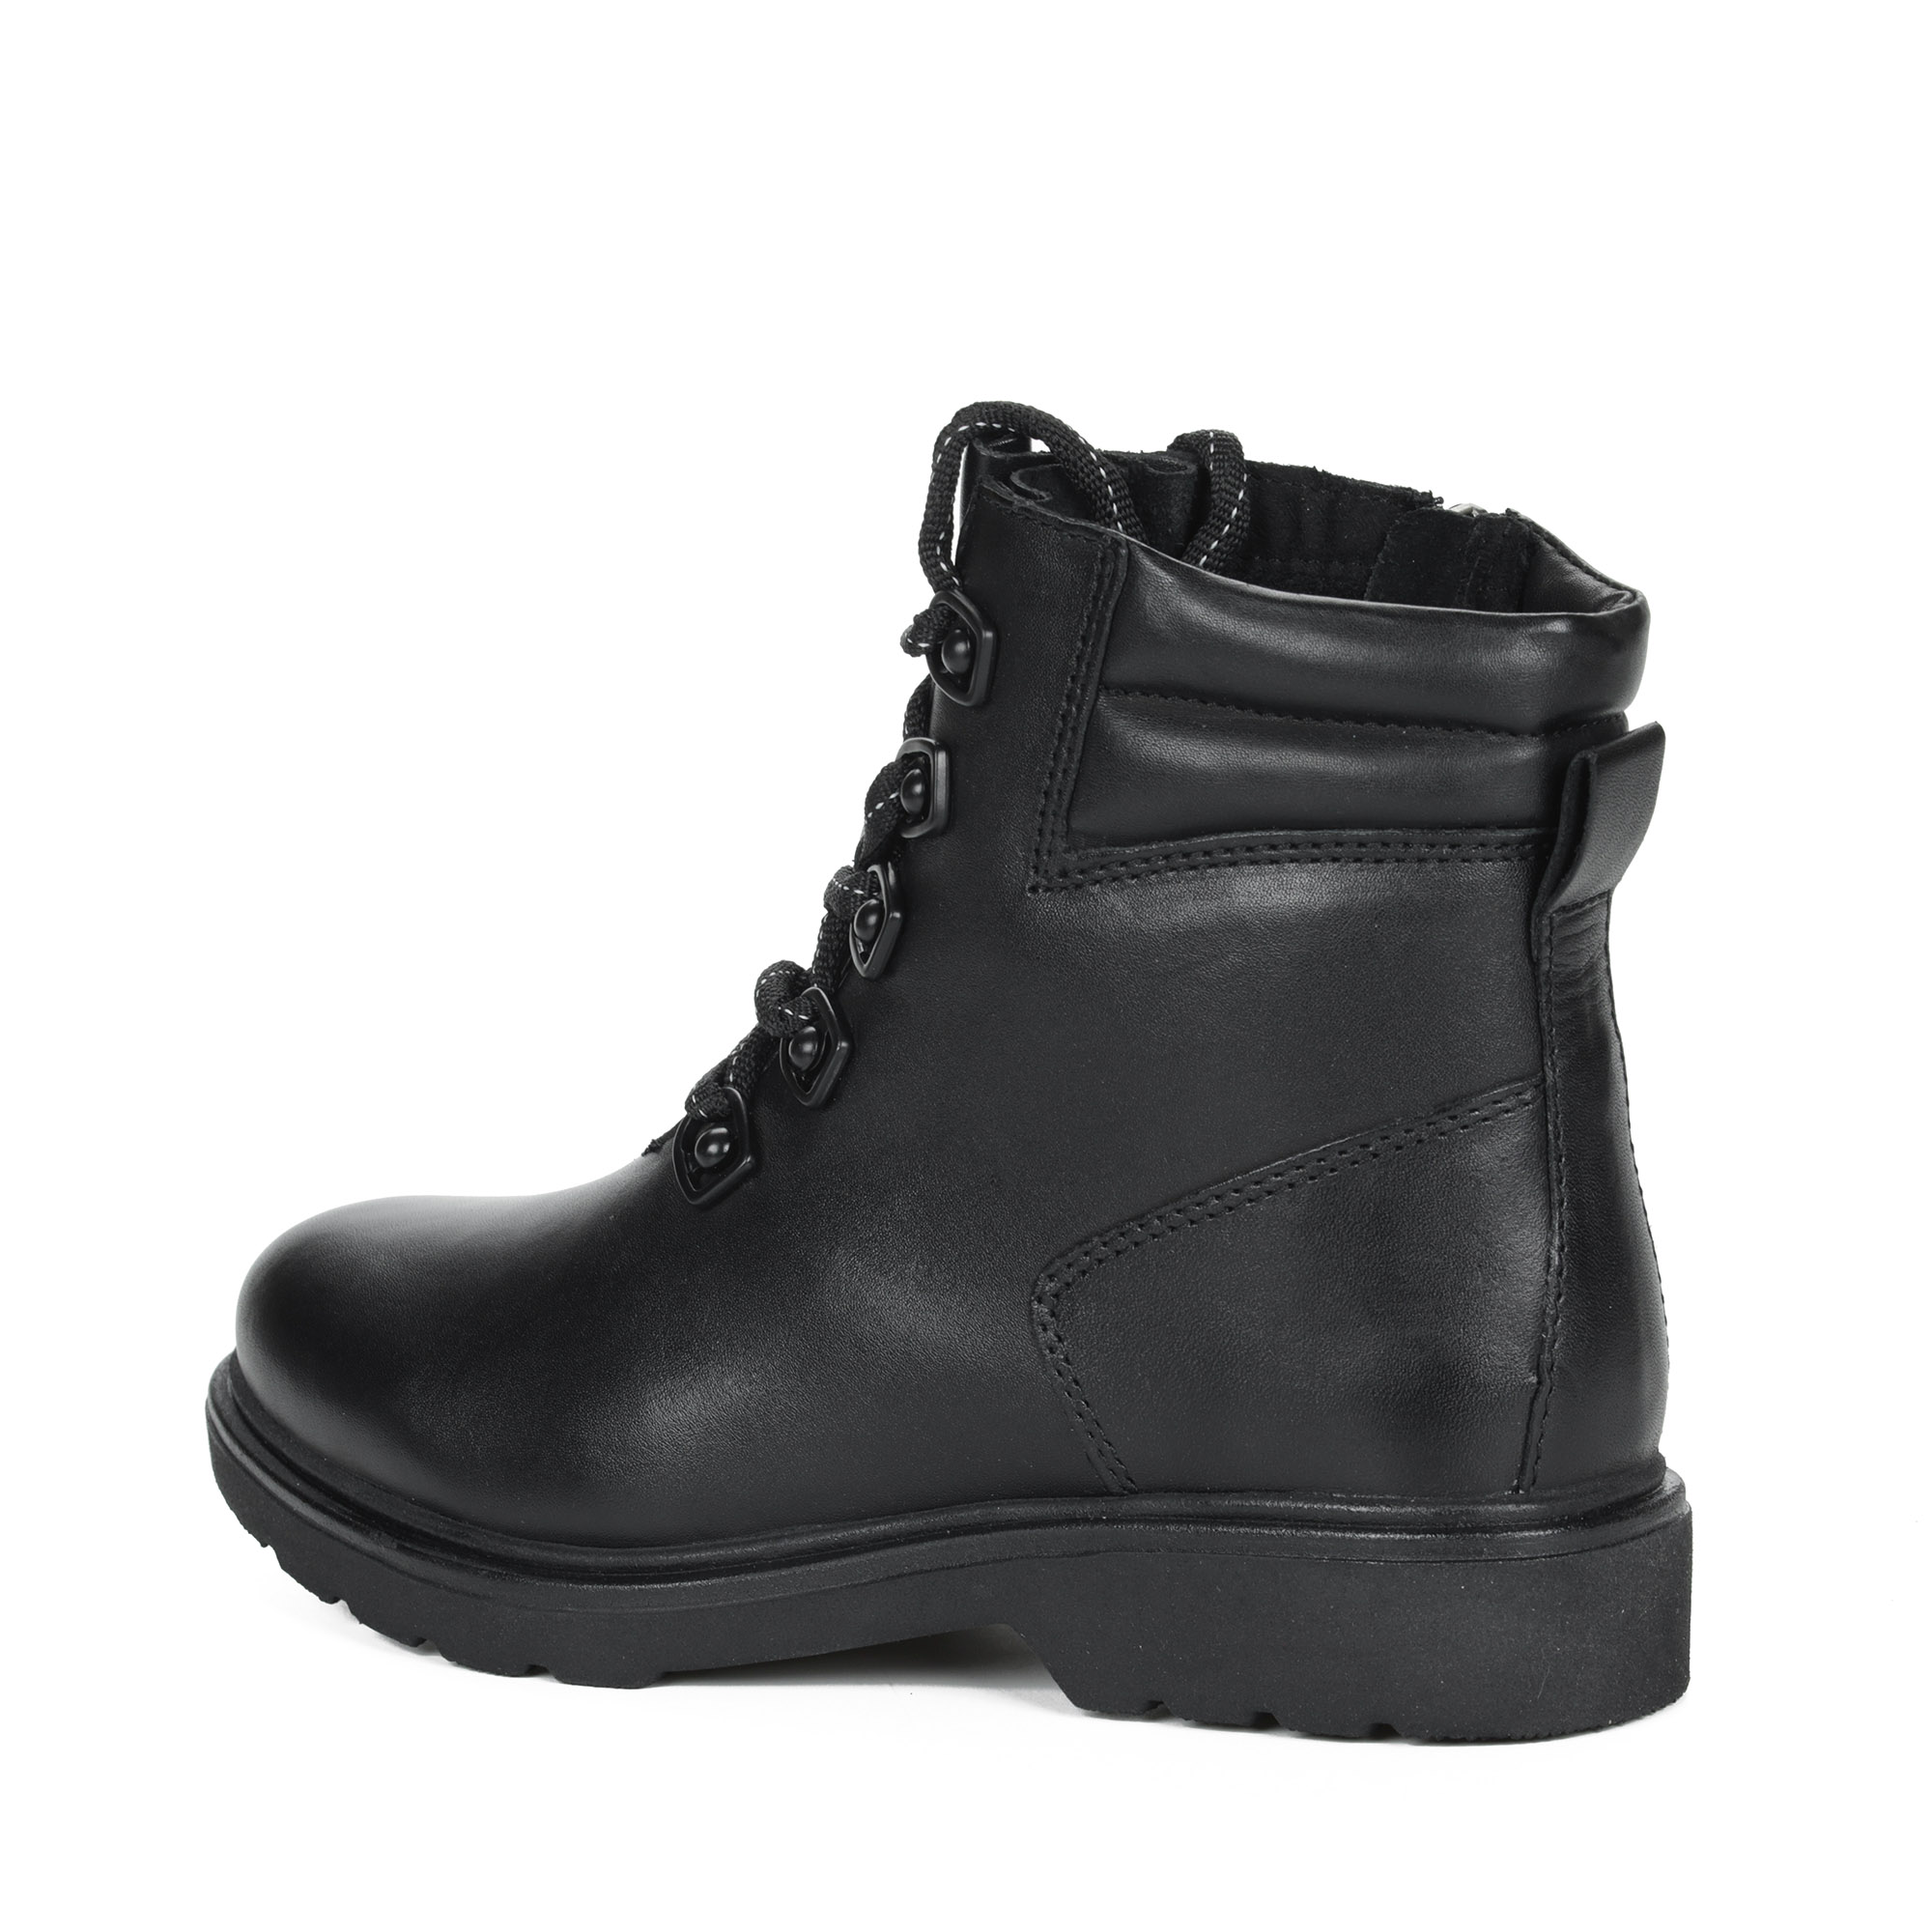 Черные ботинки на шнурках из кожи на подкладке из натуральной шерсти на тракторной подошве MARCO TOZZI PREMIO, размер 41, цвет черный - фото 5